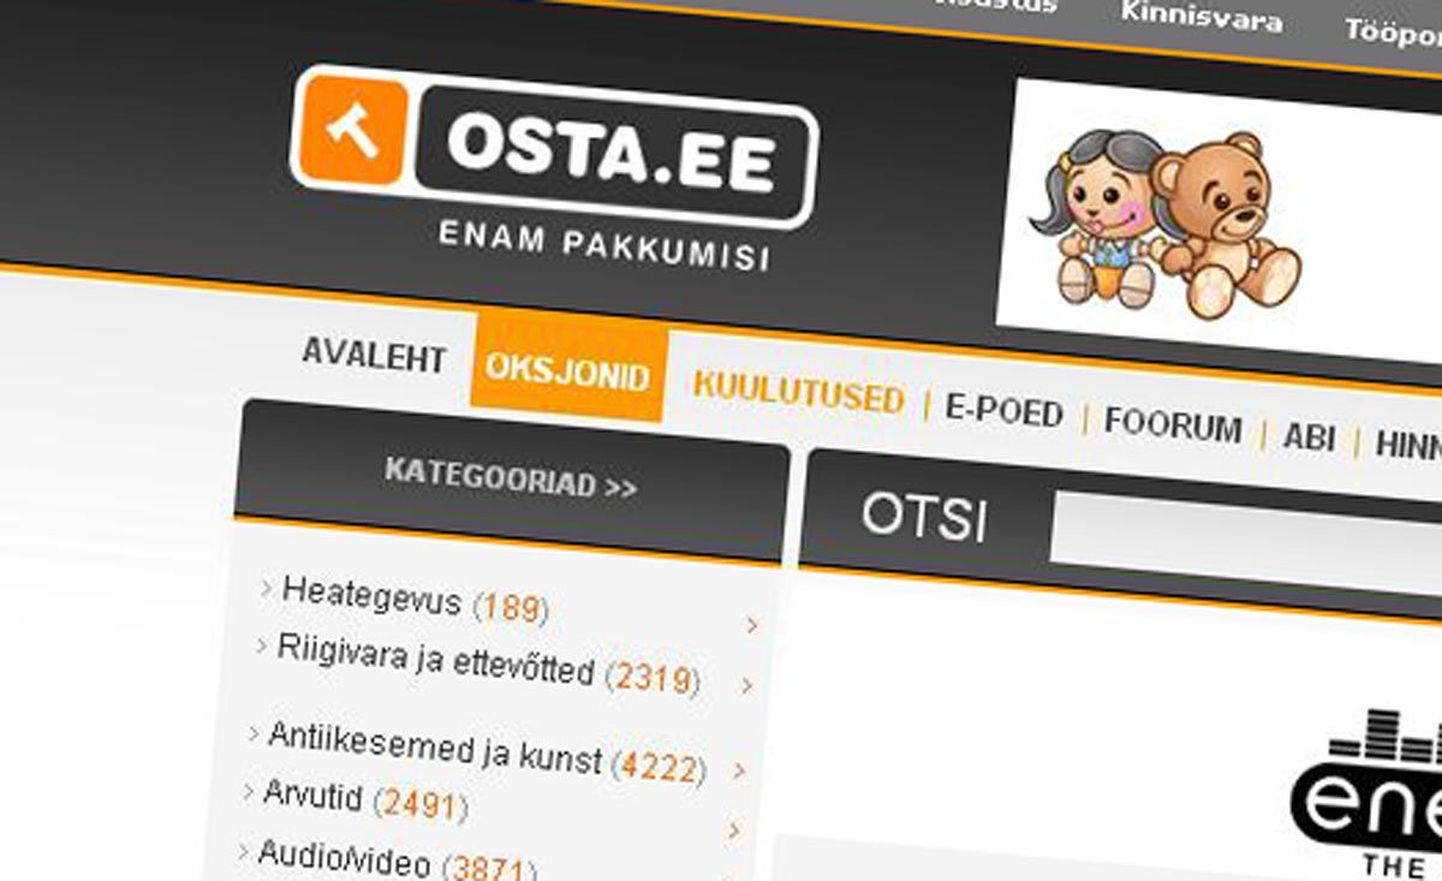 Pärnu korraldab kinnistute müügiks Interneti aadressil www.osta.ee oksjoni.